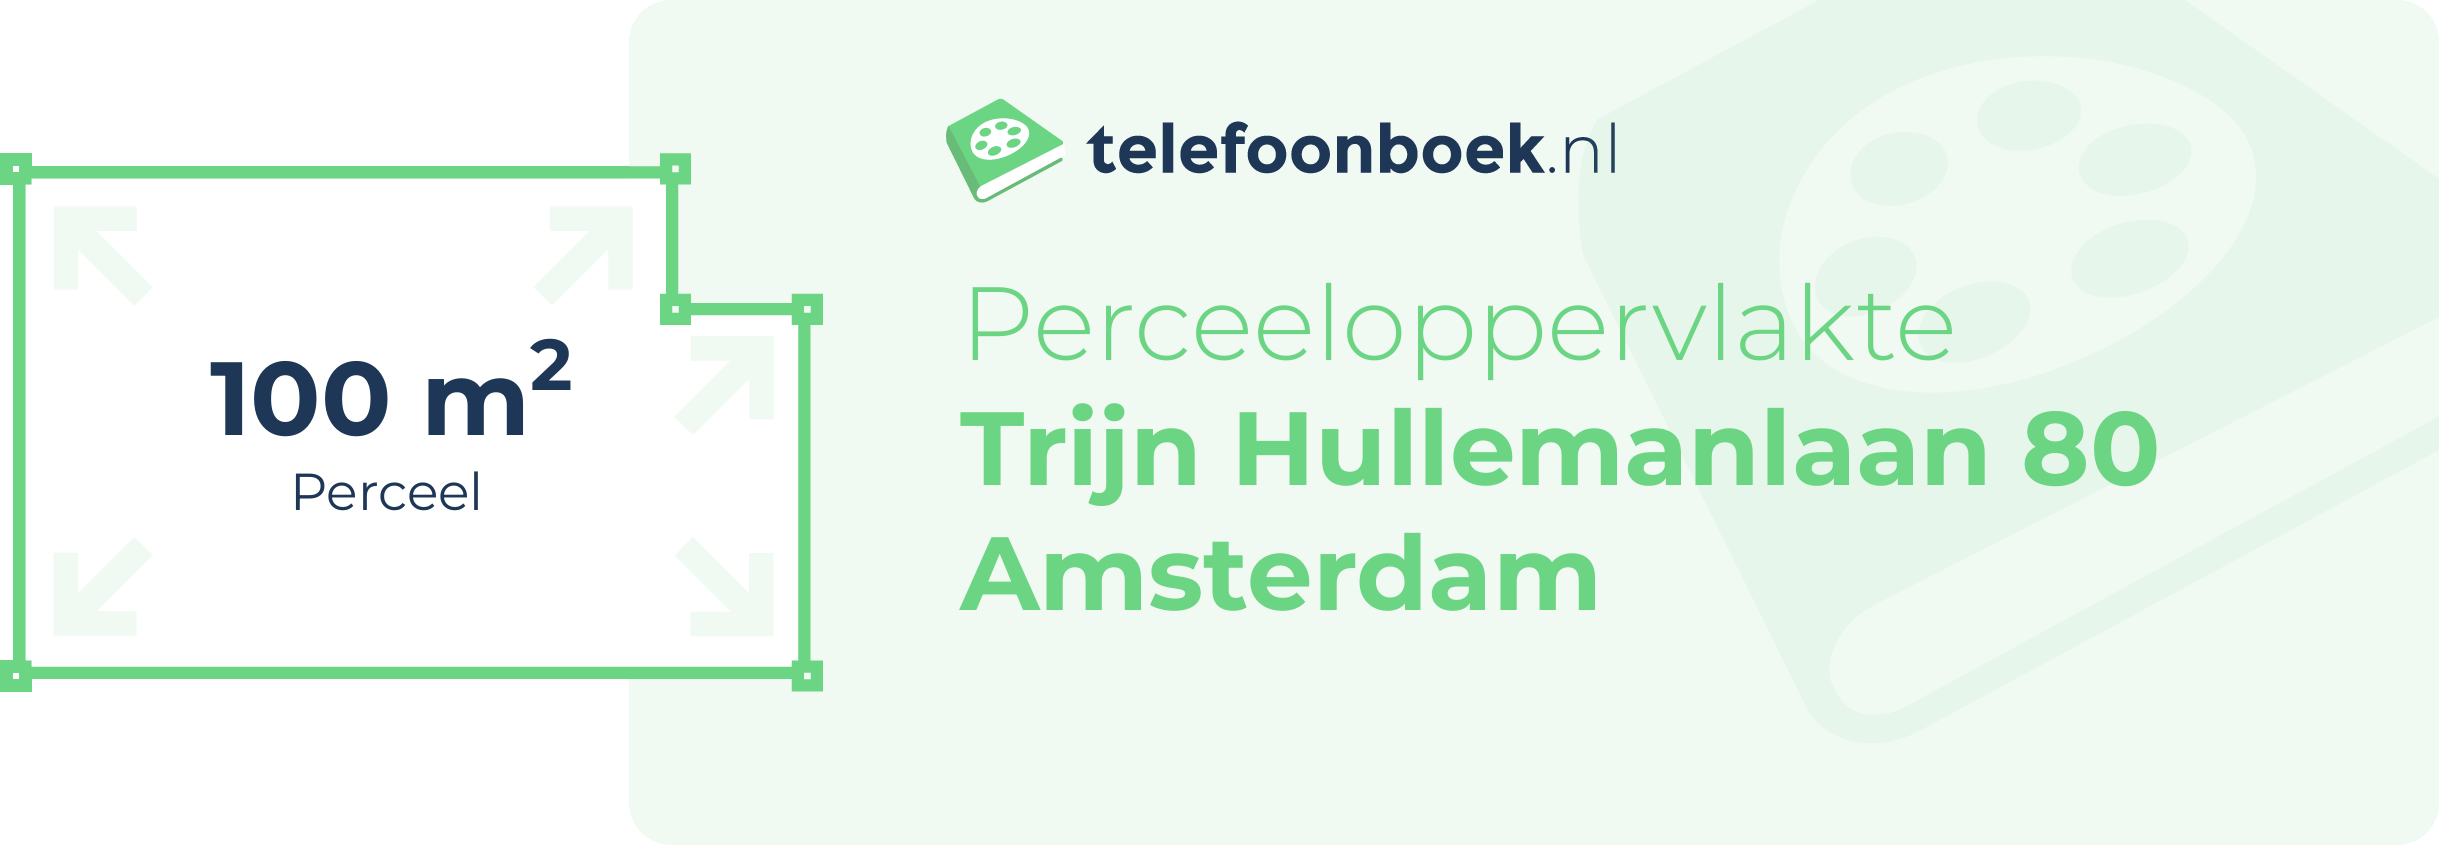 Perceeloppervlakte Trijn Hullemanlaan 80 Amsterdam